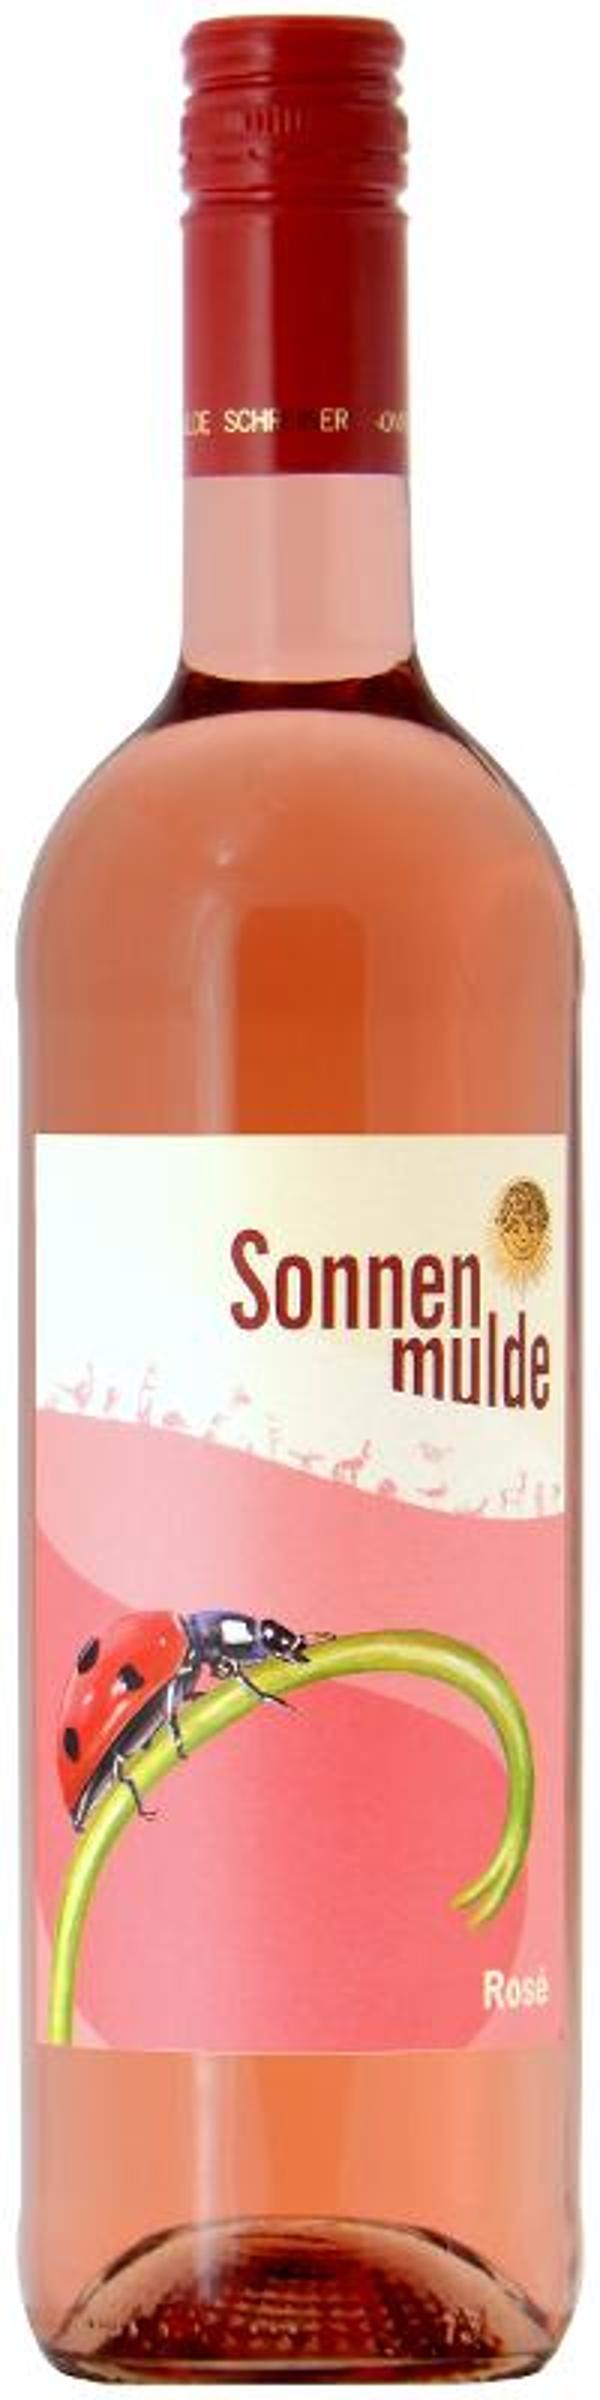 Produktfoto zu Rosé 0,75l Weingut Sonnenmulde